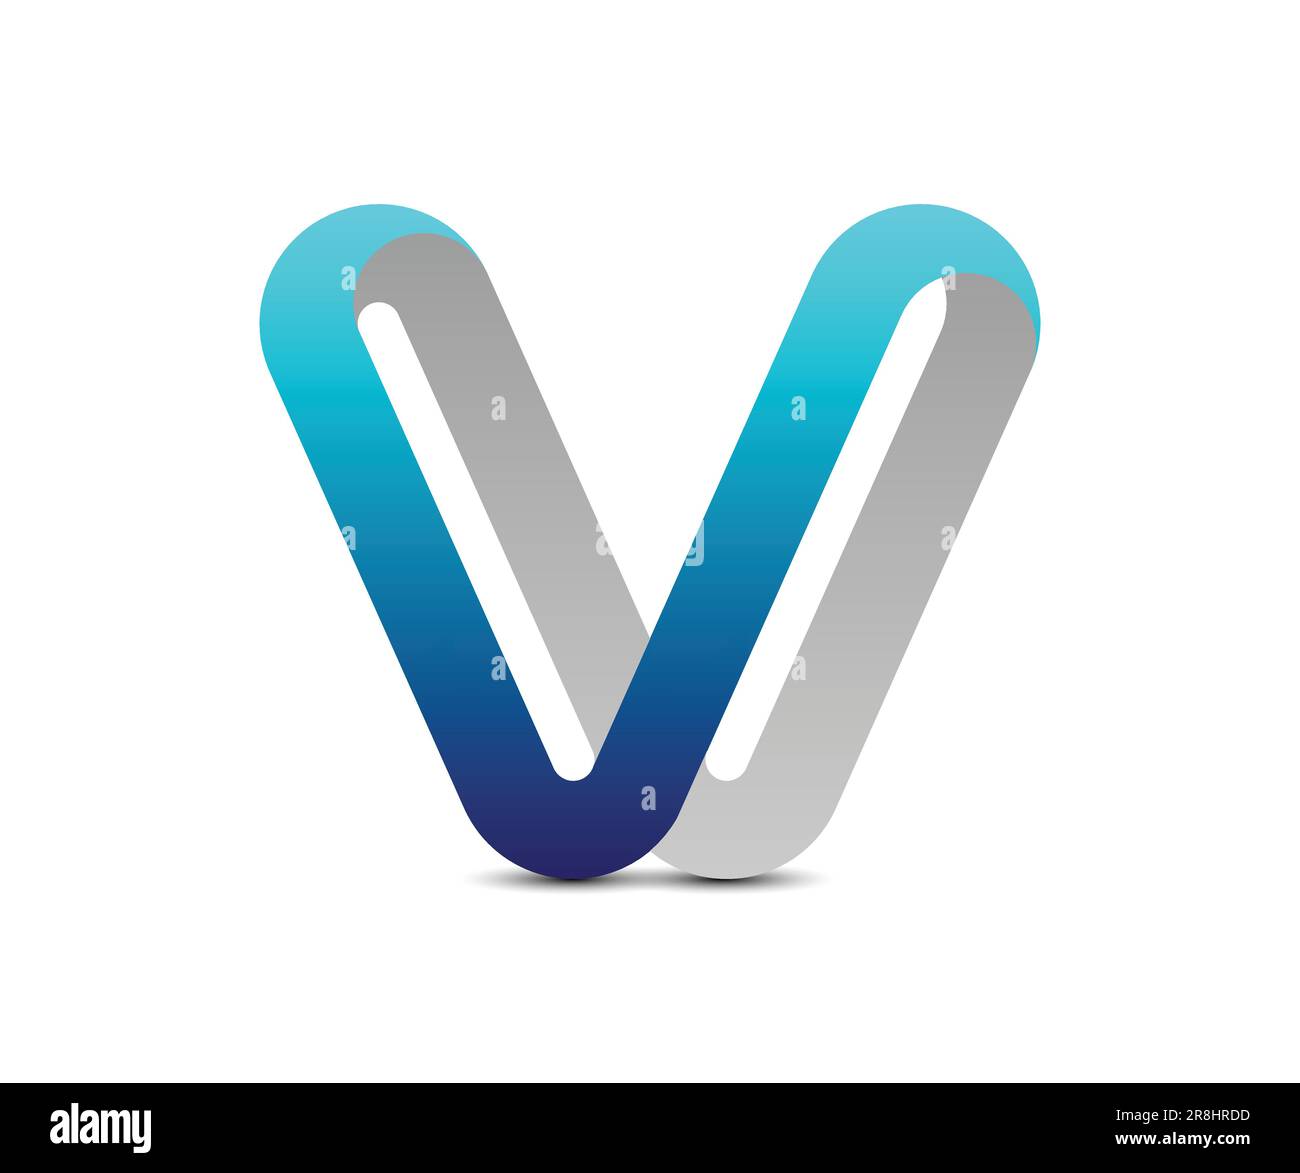 3d v logo design vector icon template Stock Vector